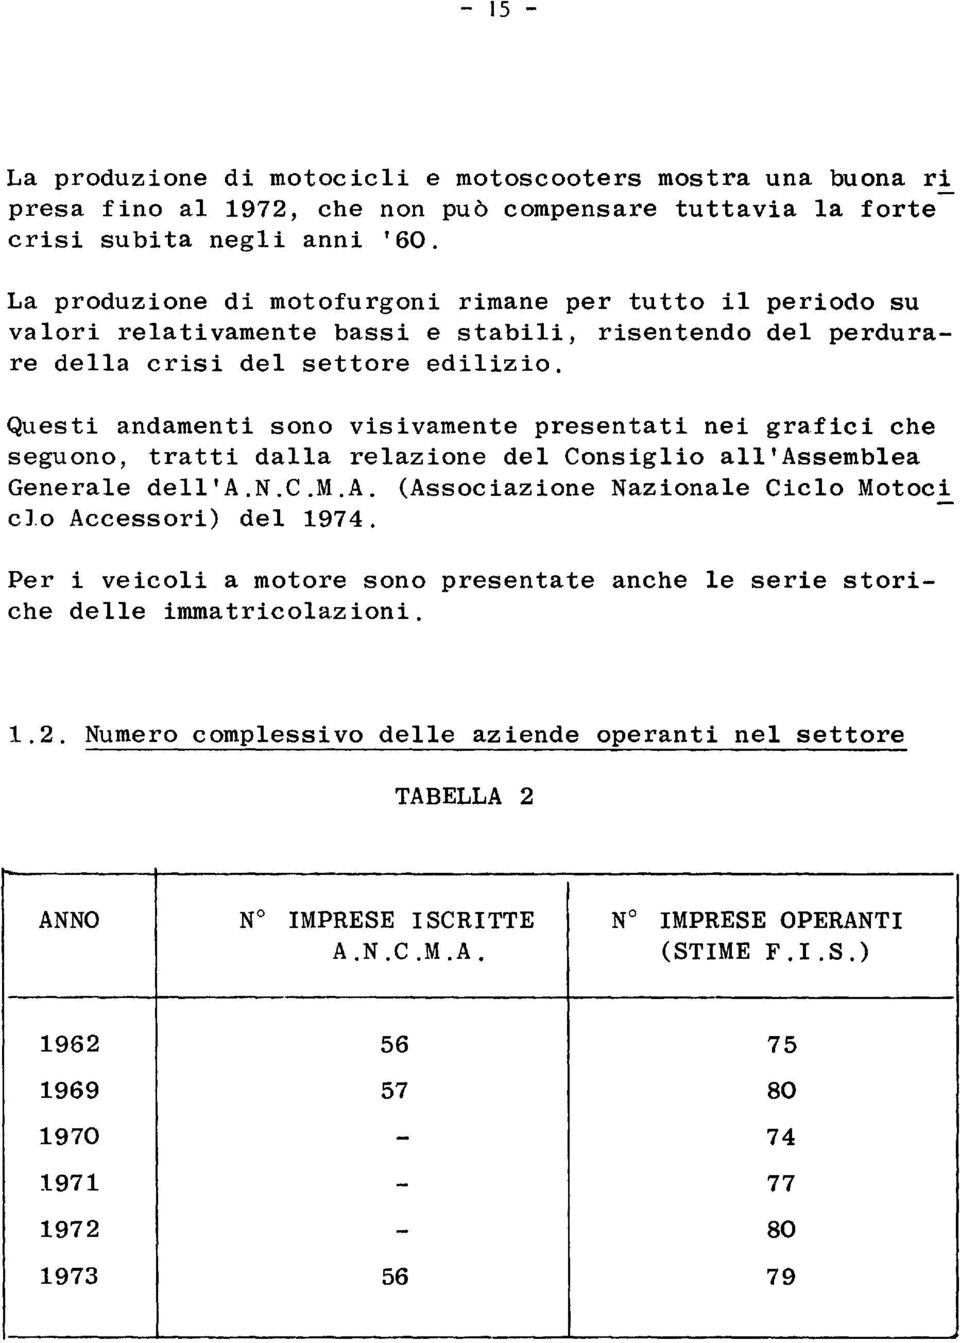 Questi andamenti sono visivamente presentati nei grafici che seguono, tratti daa reazione de Consigio a'assembea Generae de'a.n.c.m.a. (Associazione Nazionae Cico Motoci c.o Accessori) de 1974.